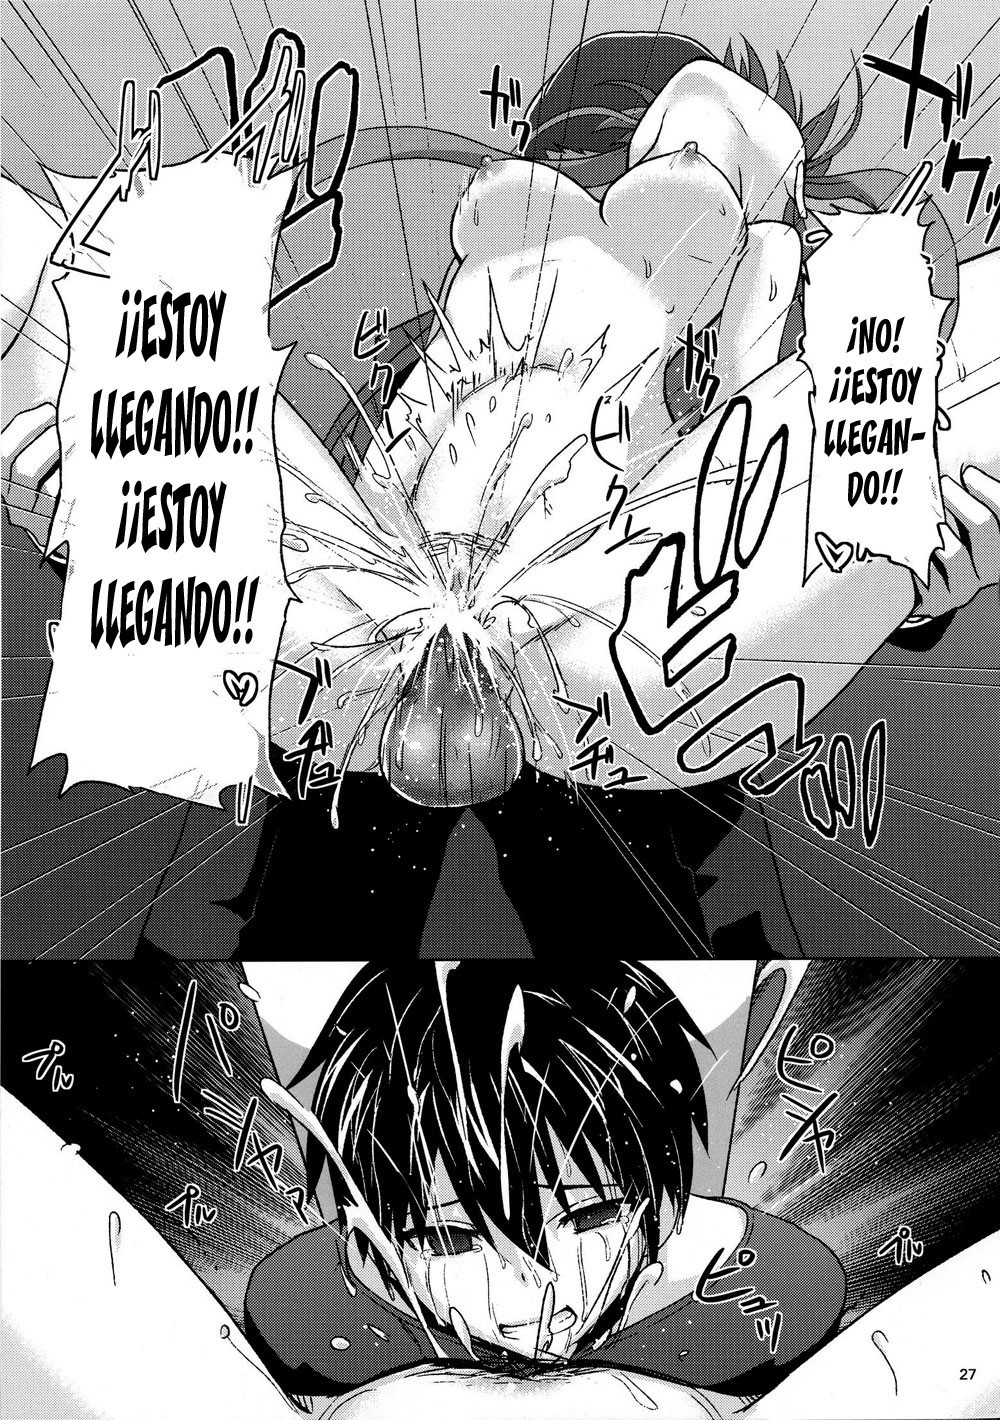 BAD END HEAVEN hentai manga picture 24